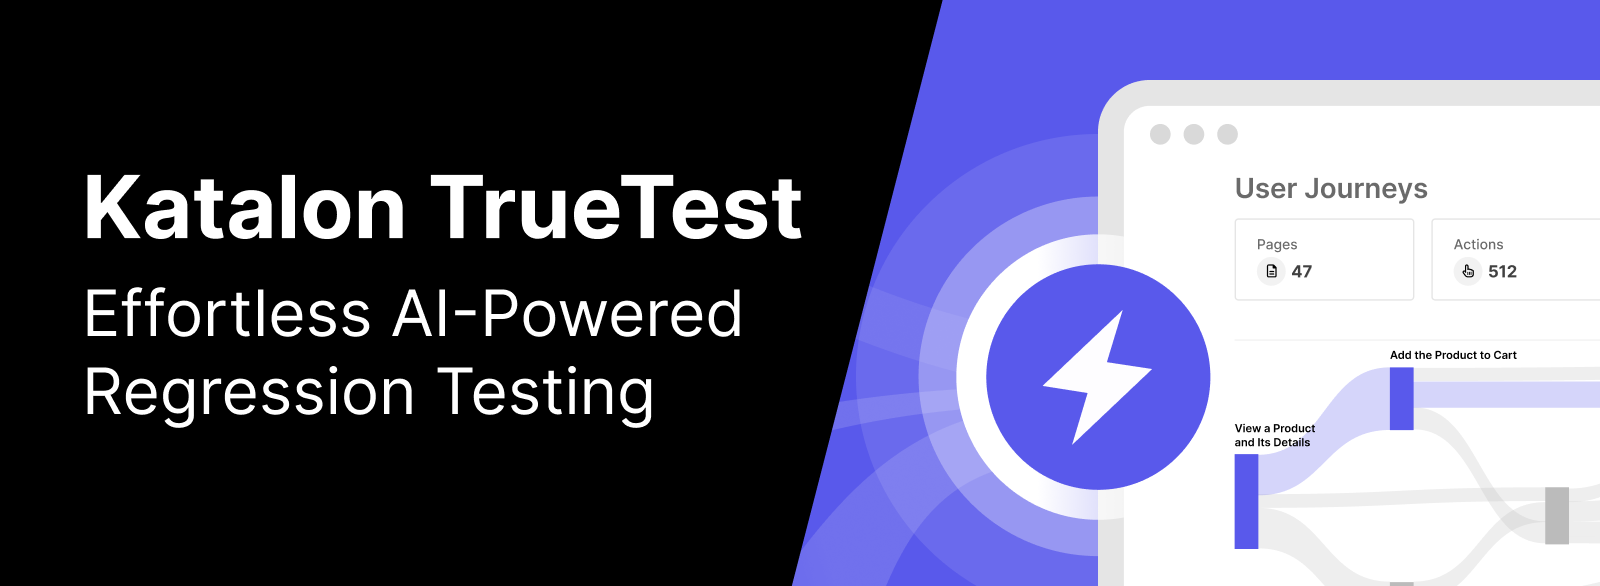 Katalon TrueTest AI-powered regression testing